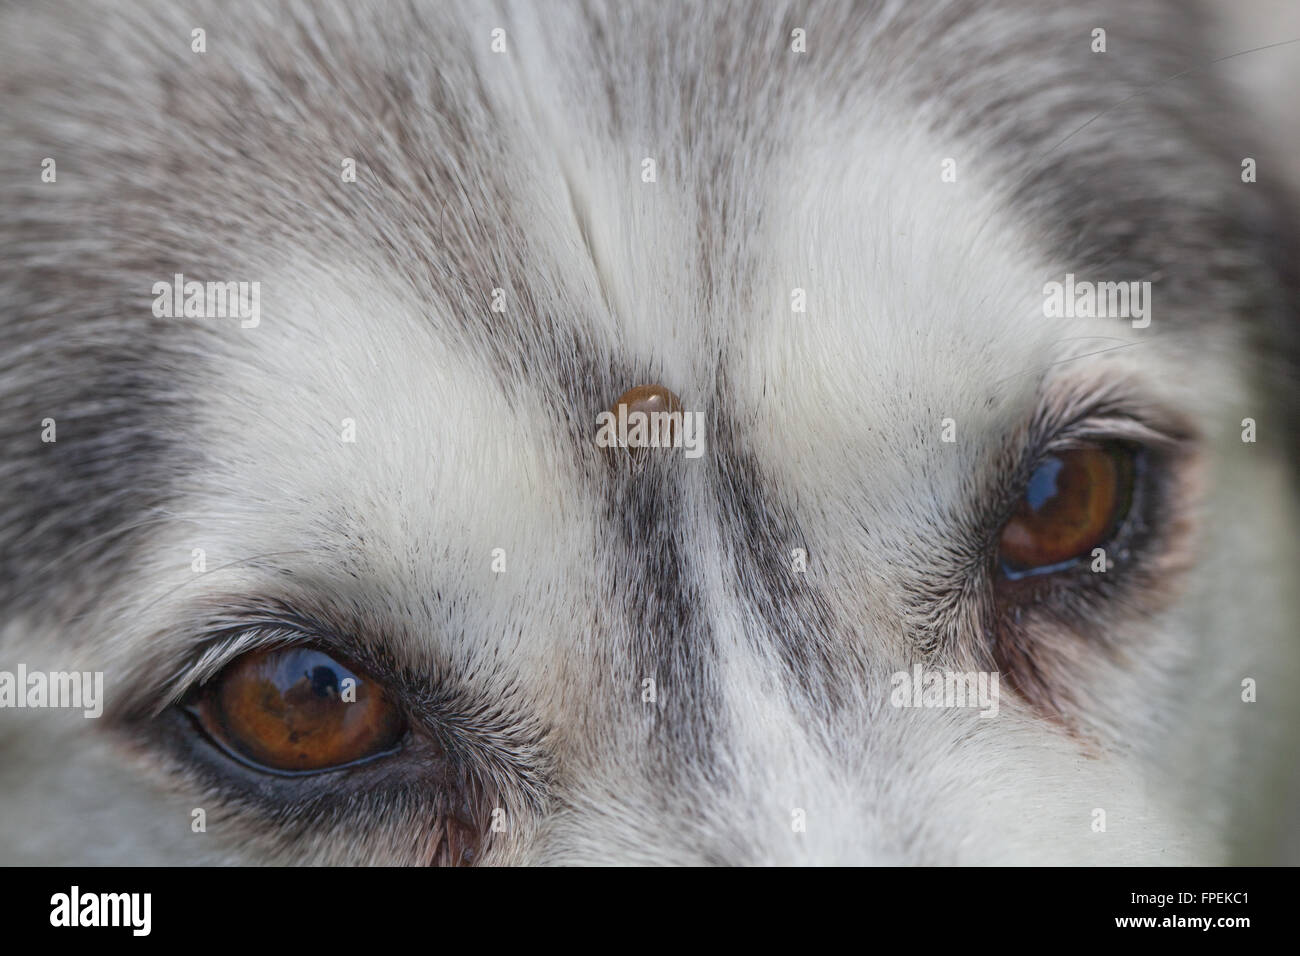 Siberian Husky. Hund. Canis Lupus Familiaris. Stirn. Beachten Sie, dass die Zecke Ixodes Ricinus, auf der Stirn oben zwischen Augen eingebettet. Stockfoto